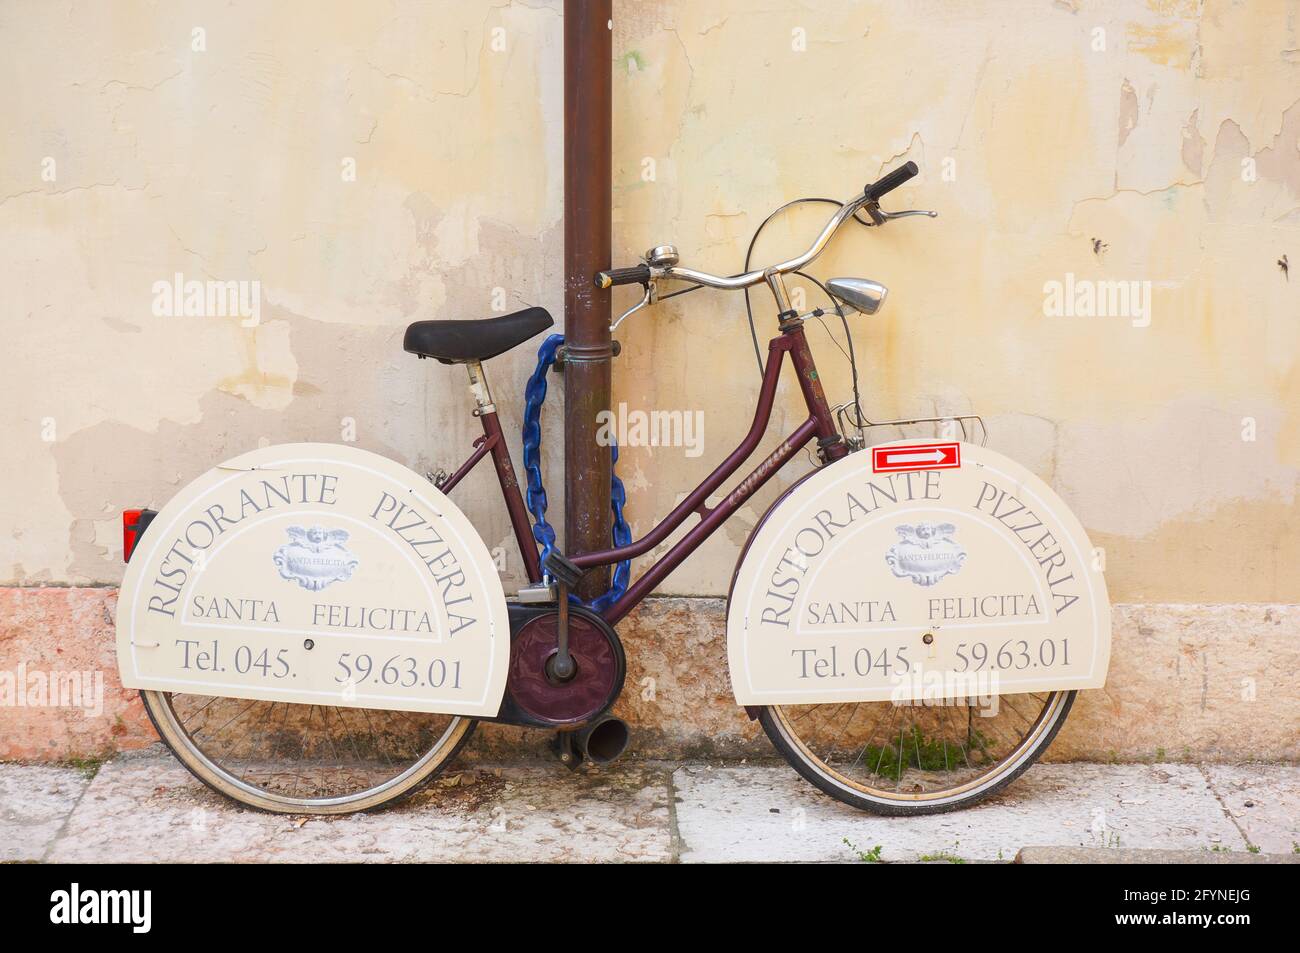 VÉRONE, ITALIE - 27 avril 2016: Vélo avec des signes de Ristorante Pizzeria Santa Felicita verrouillé sur un tuyau Banque D'Images